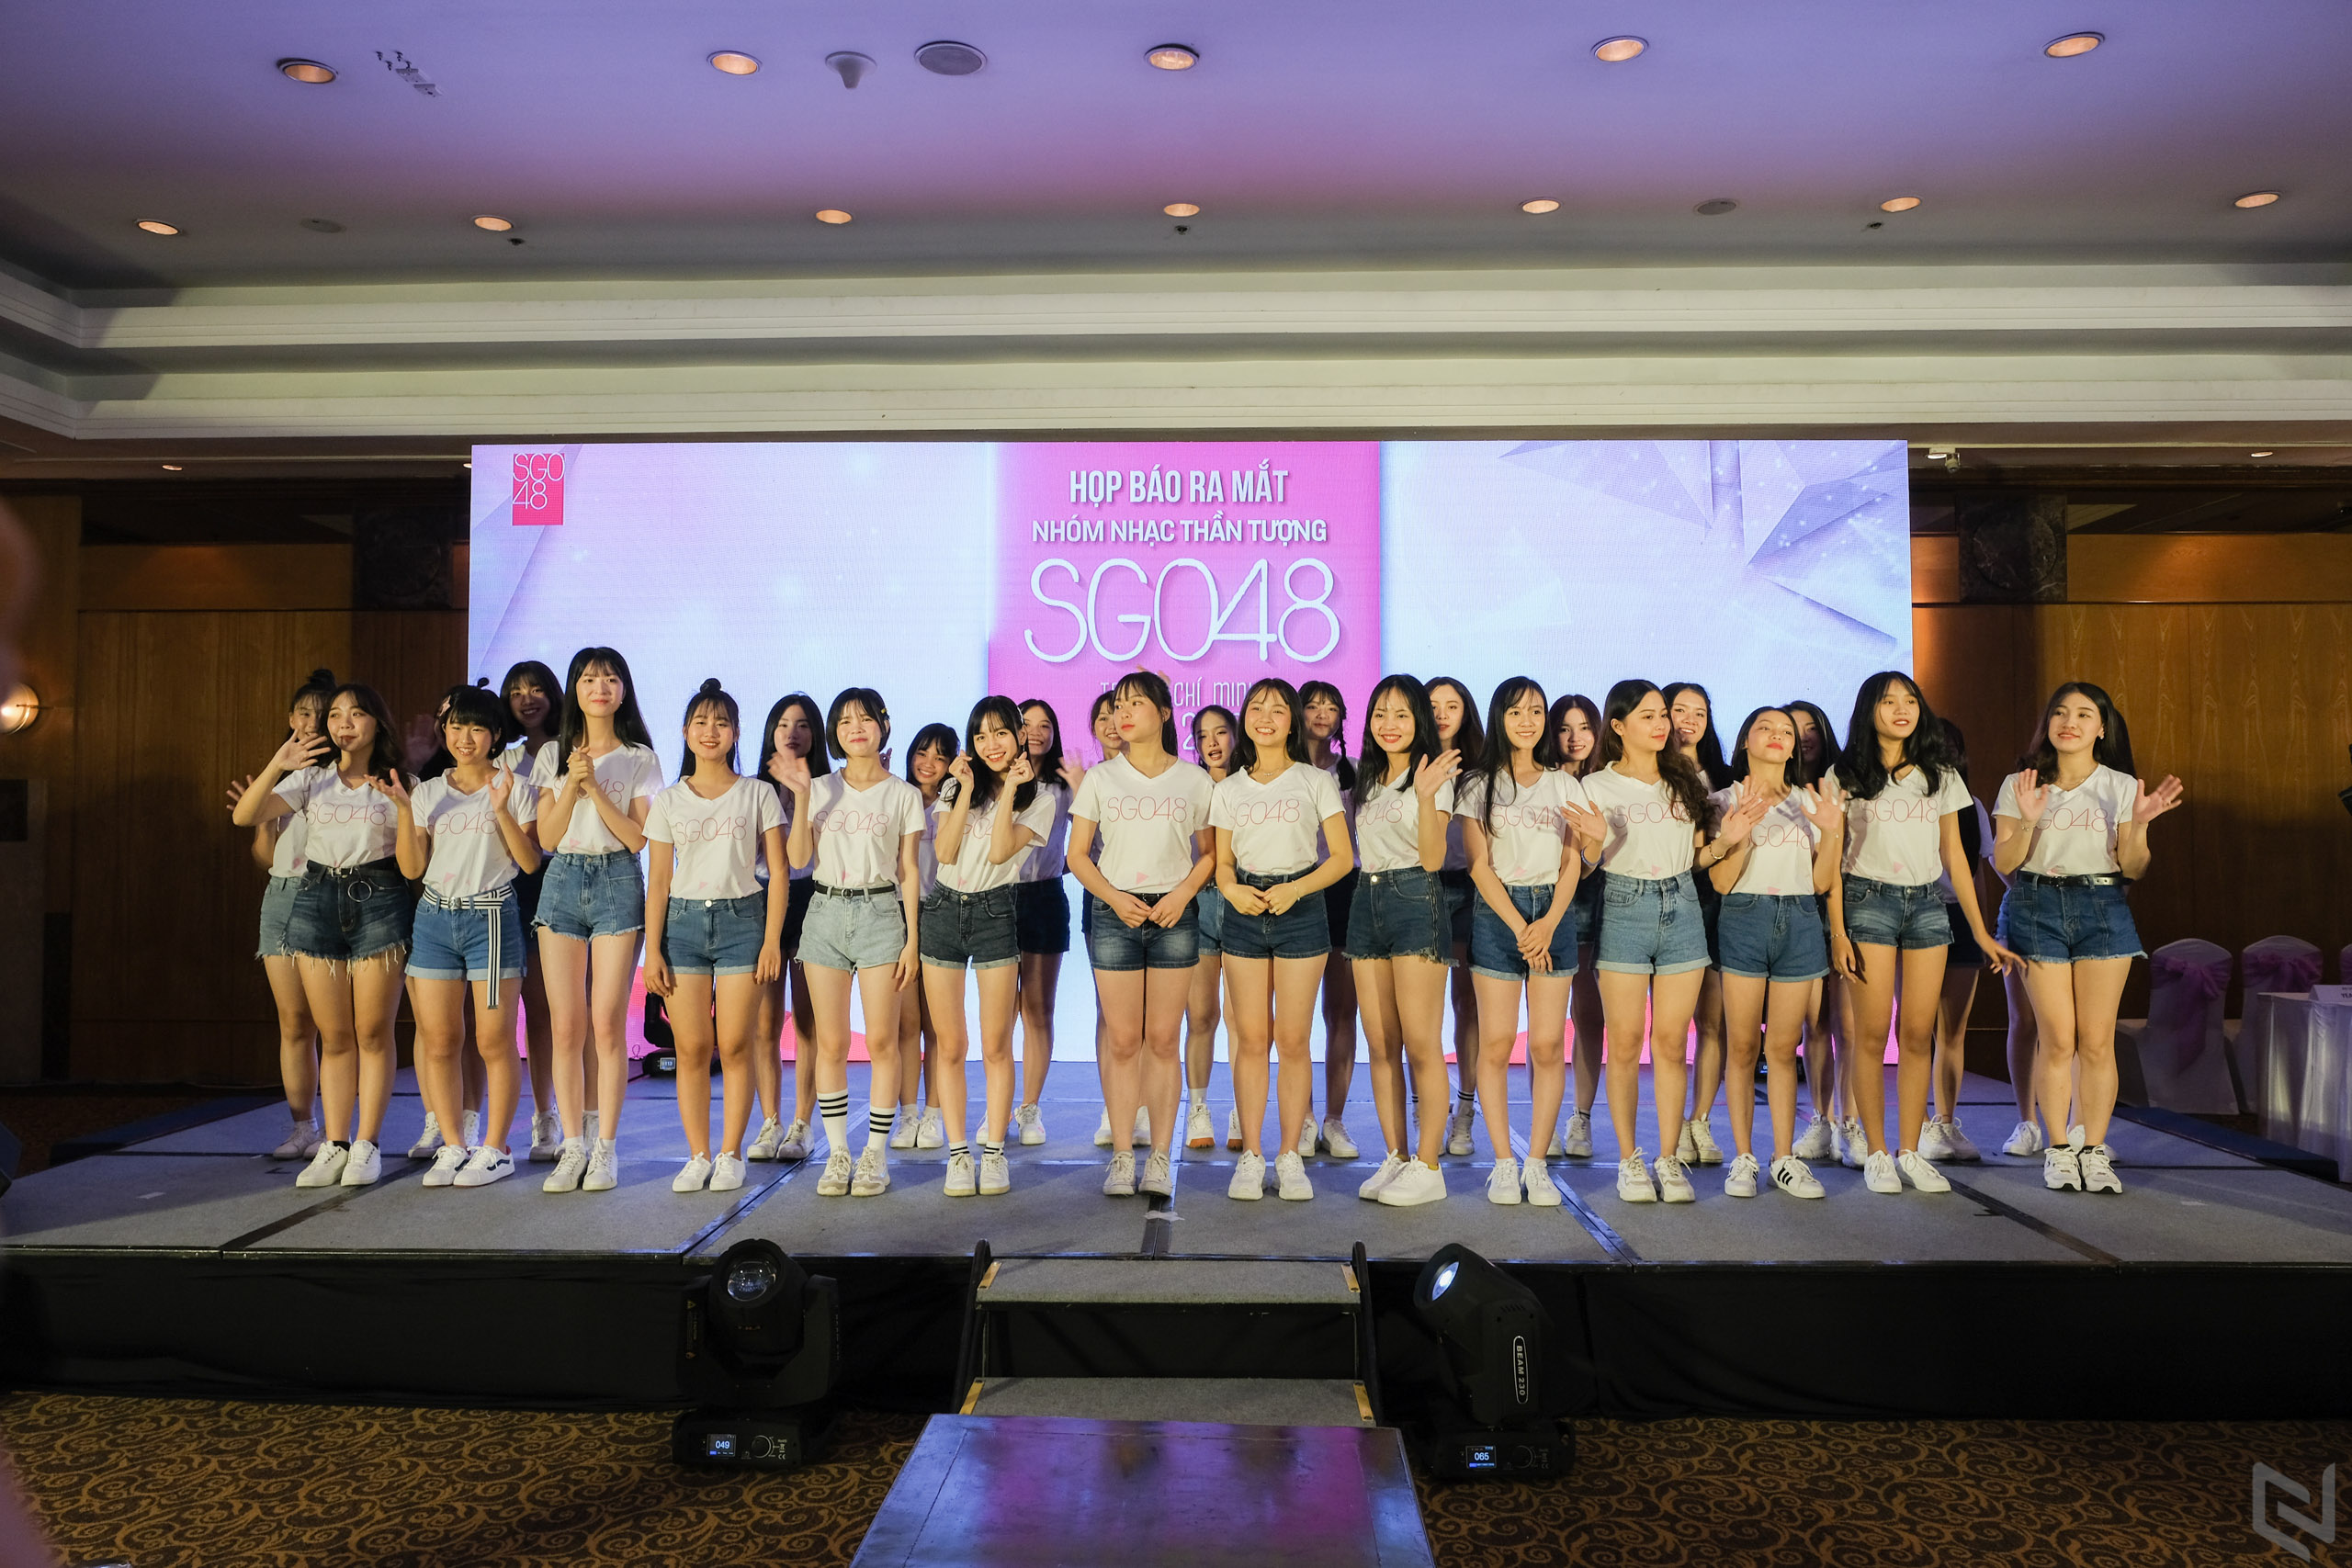 SGO48 nhóm nhạc chị em chính thức của AKB48 ra mắt thế hệ đầu tiên tại Việt Nam